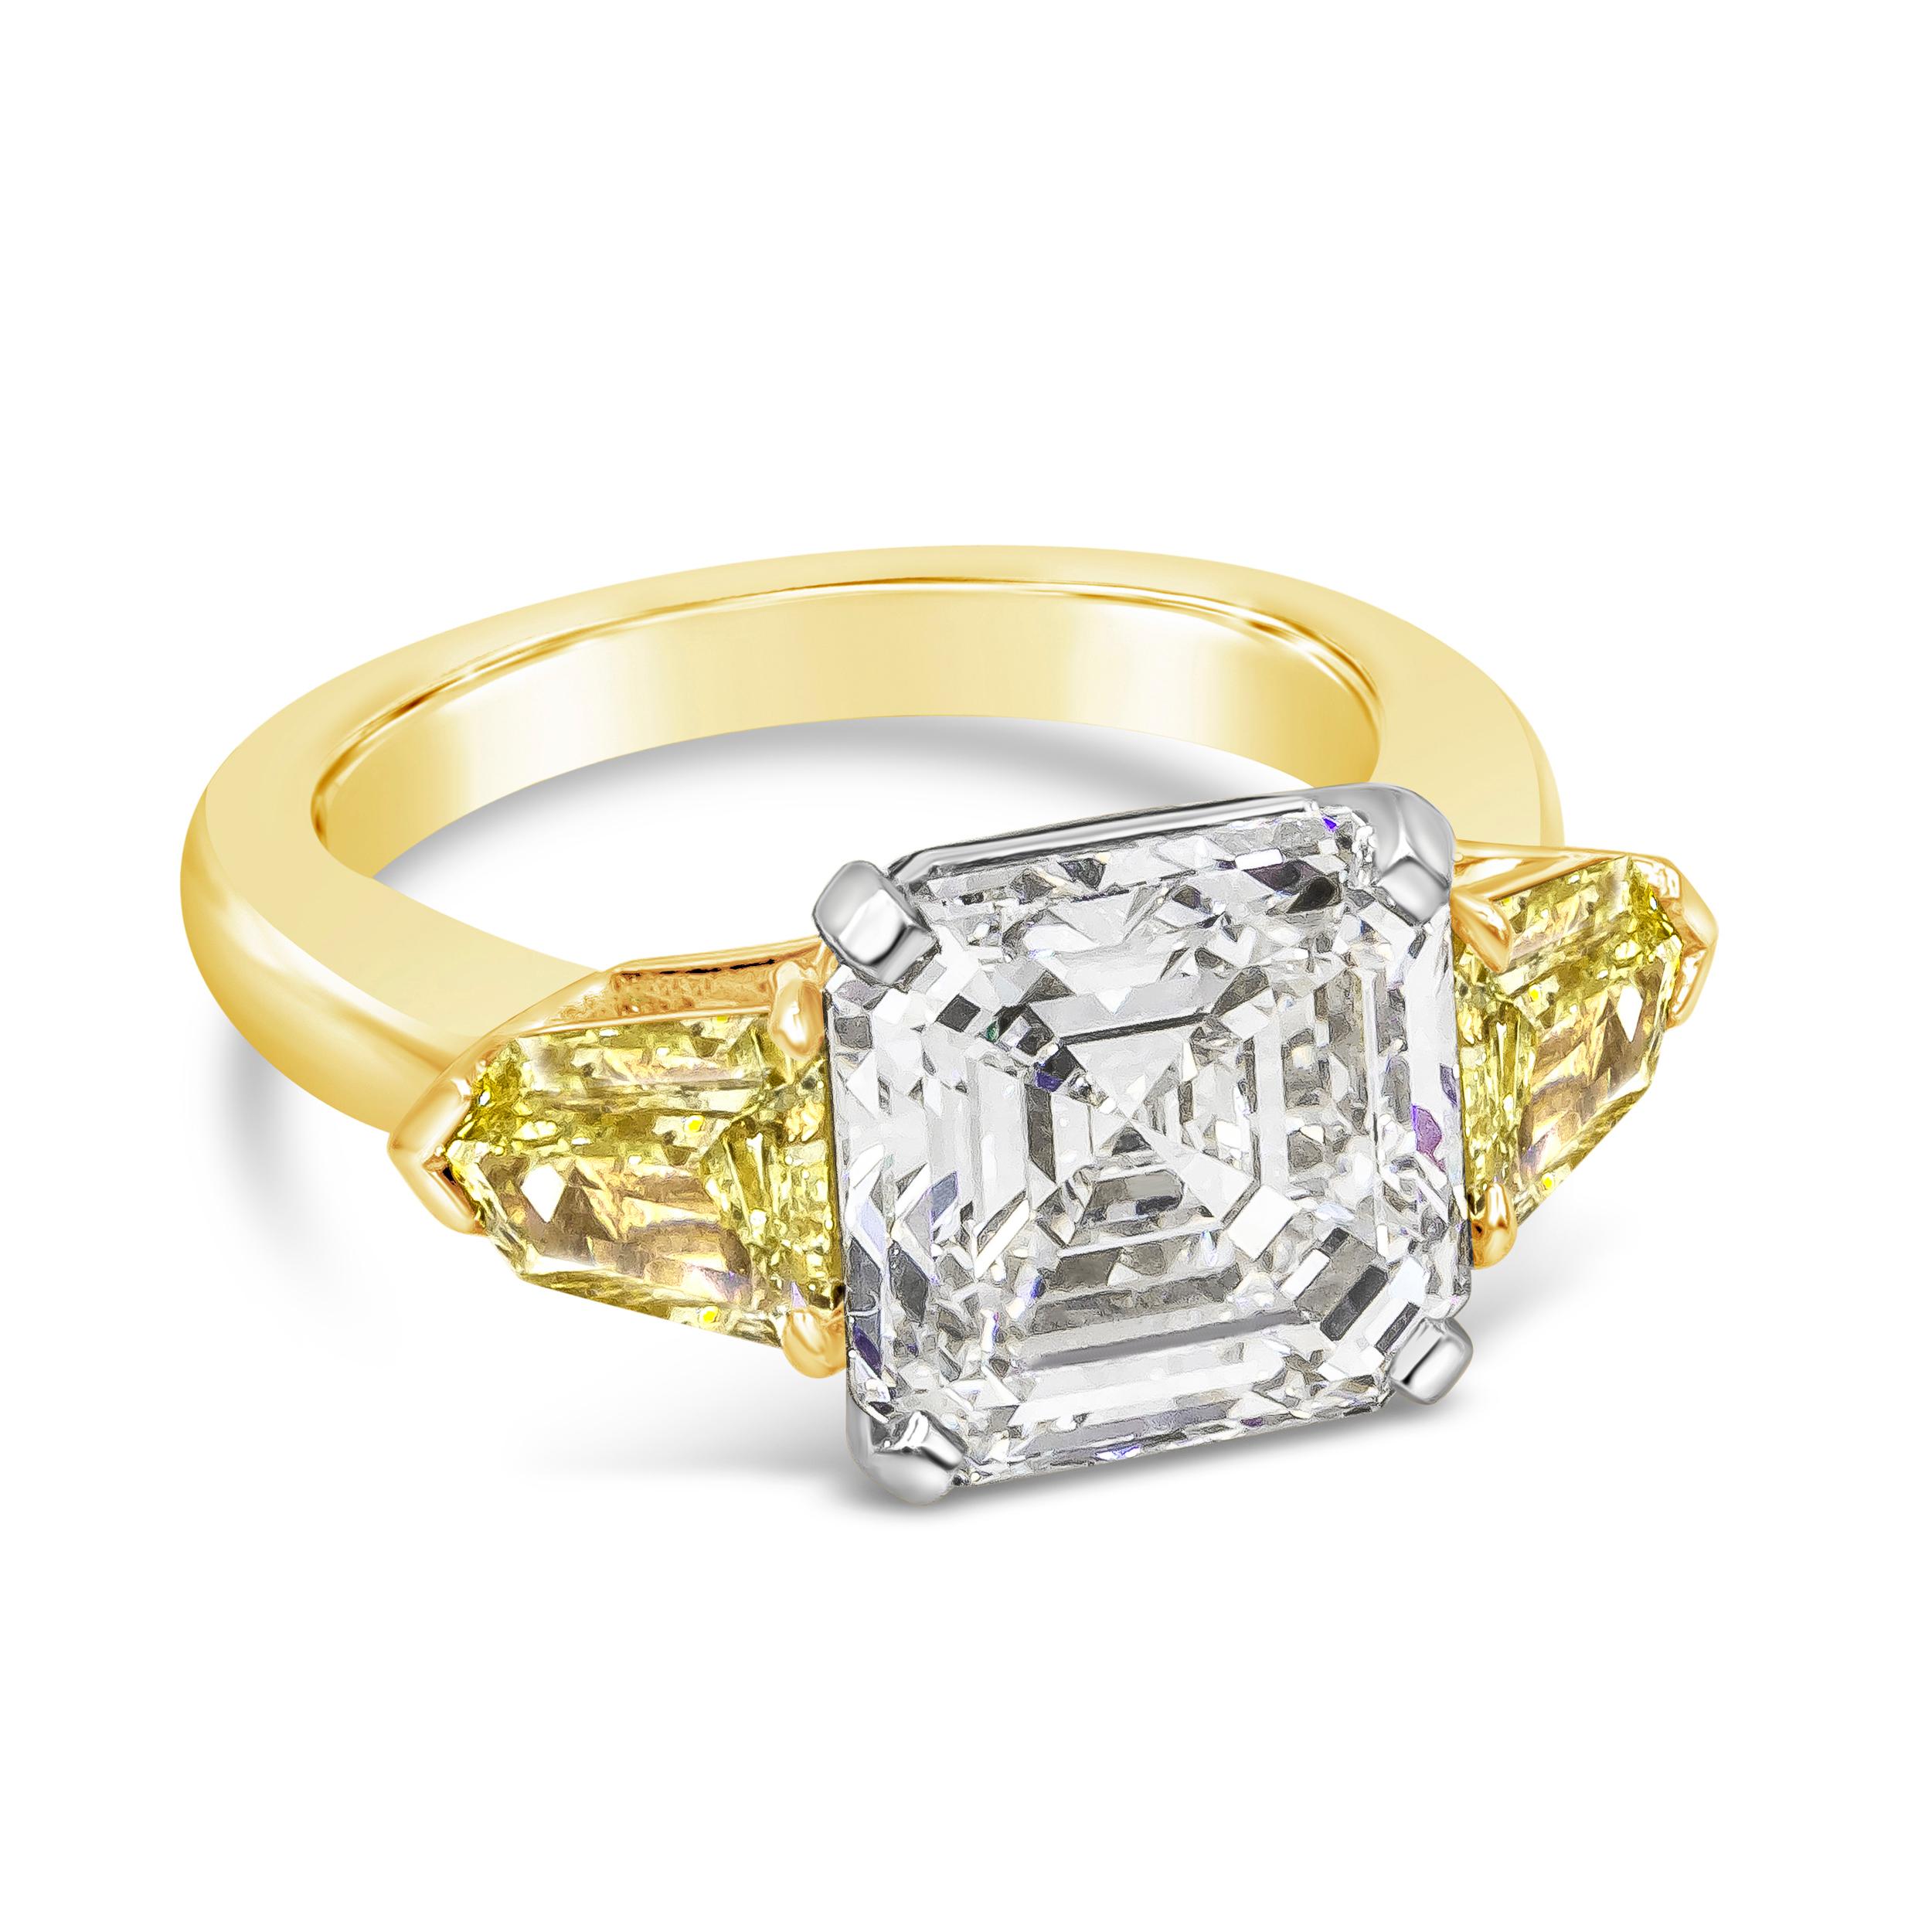 Gut gearbeiteter High-End-Verlobungsring mit einem 5,05 Karat GIA-zertifizierten Diamanten im Asscher-Schliff, VS1 in Reinheit. Flankiert von zwei farbintensiven gelben Diamanten mit einem Gesamtgewicht von 0,81 Karat auf jeder Seite. In 18 Karat